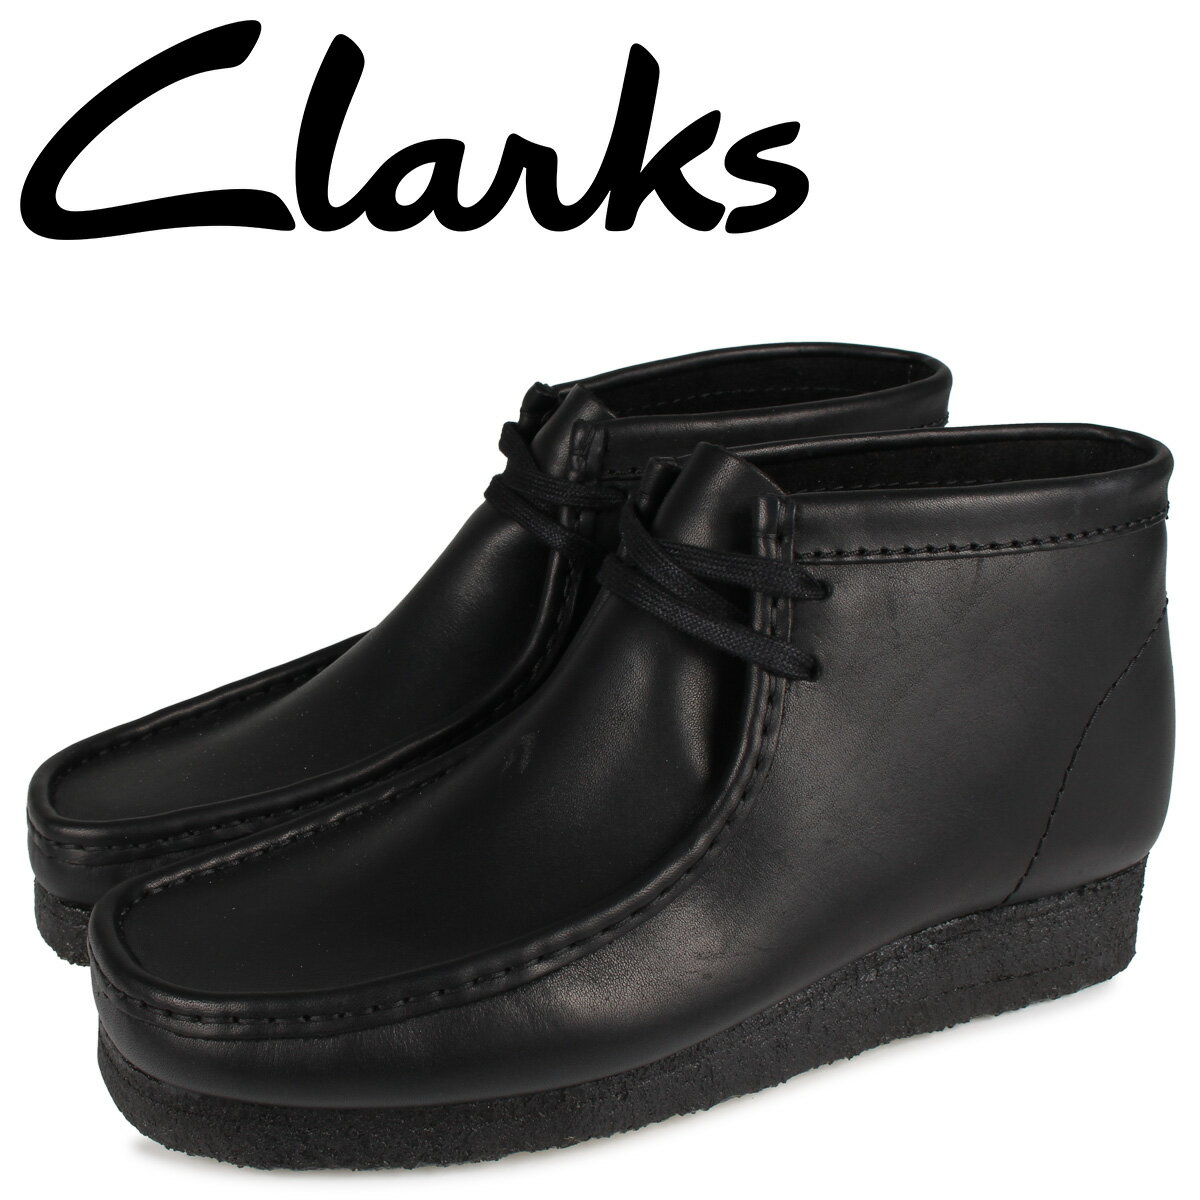 【訳あり】 【BOX破損】 クラークス Clarks ワラビーブーツ メンズ WALLABEE BOOT ブラック 黒 26155512 【返品不可】